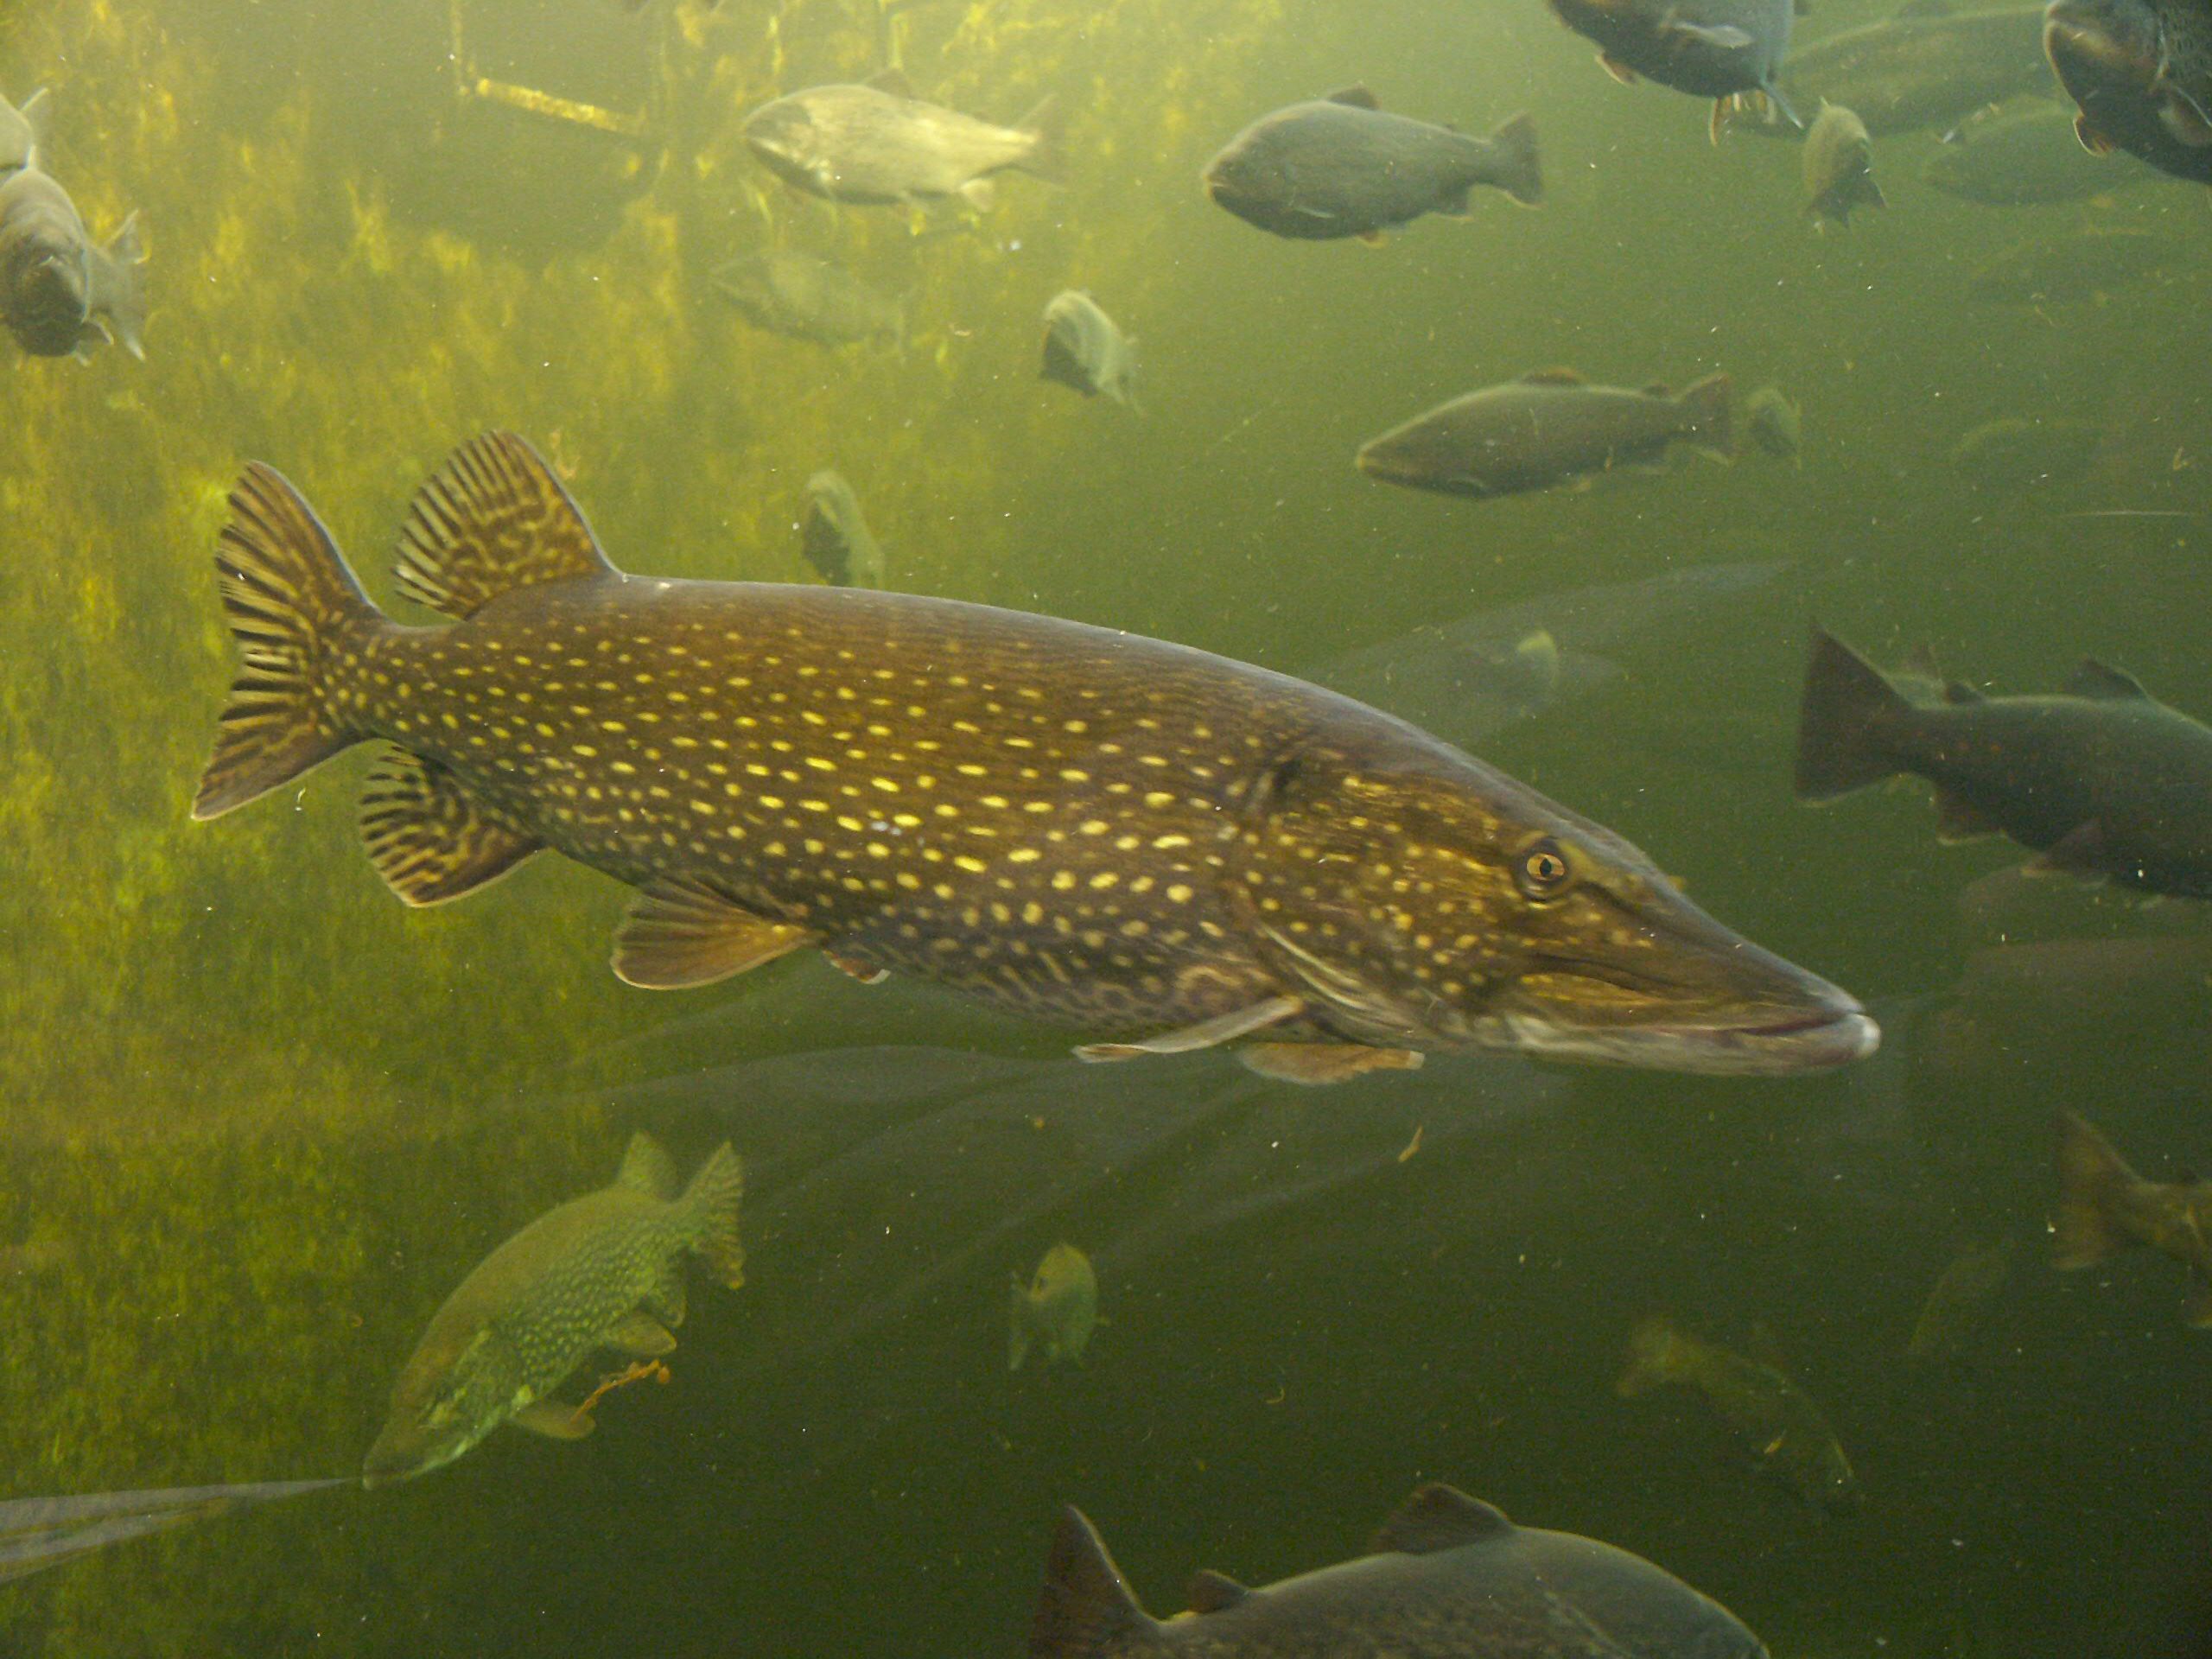 Pike en un aquari públic (Kotka, Finlàndia)